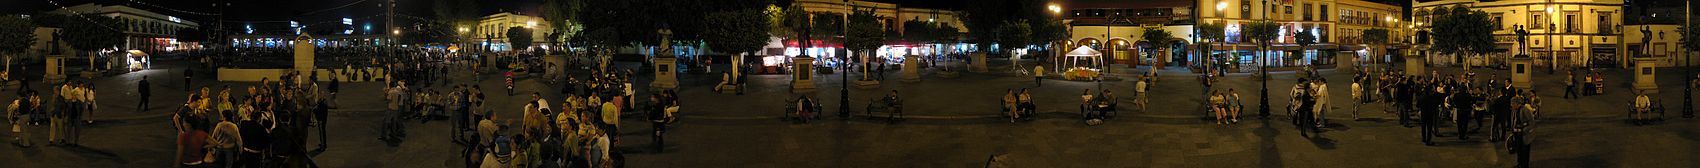 360° Panorama des Plaza Garibaldi im historischen Zentrum von Mexiko-Stadt. Mariachi-Bands spielen ihre Musik vor unterschiedlichem Publikum. Das Foto zeigt den Platz, wie er bis 2009 aussah, 2010 wurde er umgebaut und verlor dabei seinen Kiosk und andere traditionelle Straßenmöbel.